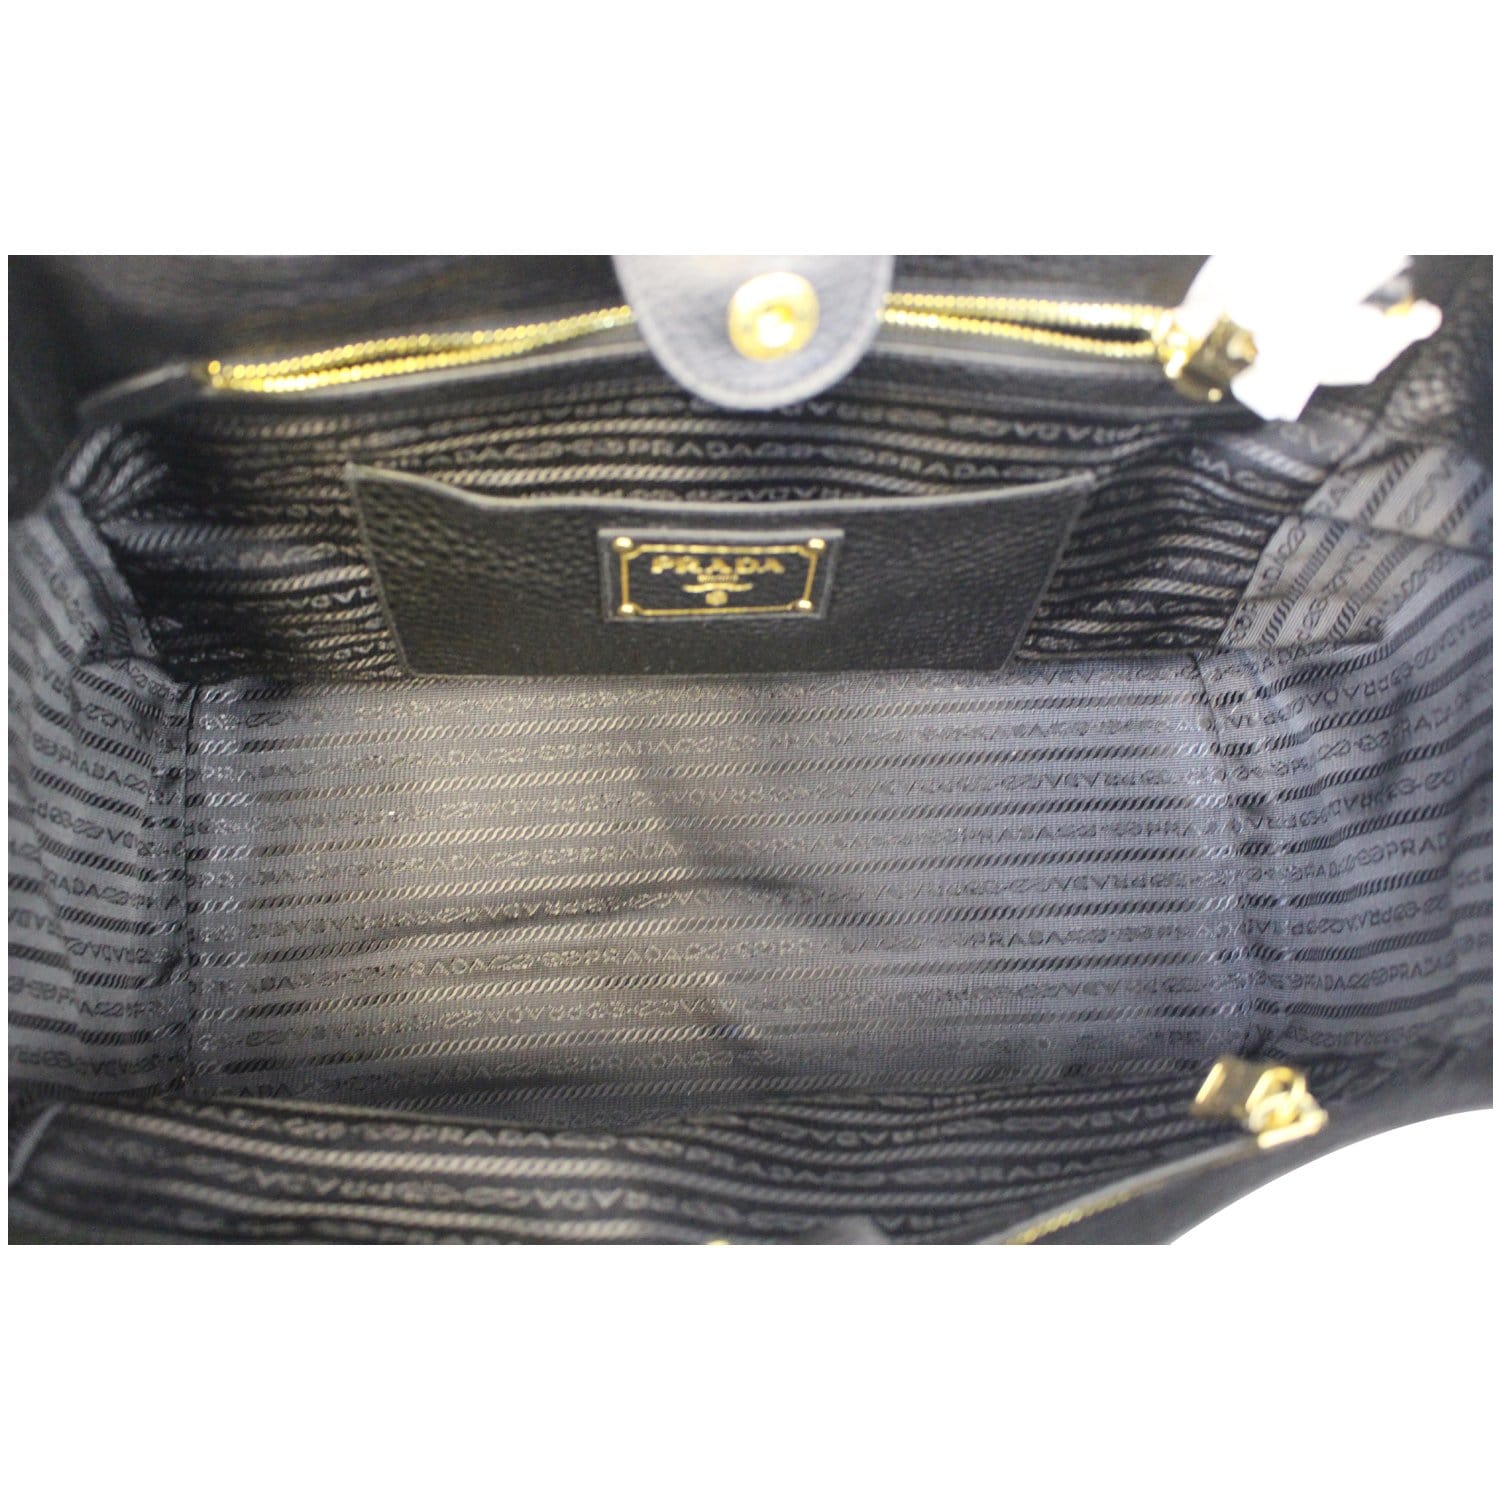 Versace Vitello Tote Bag Black in Saffiano Leather - US